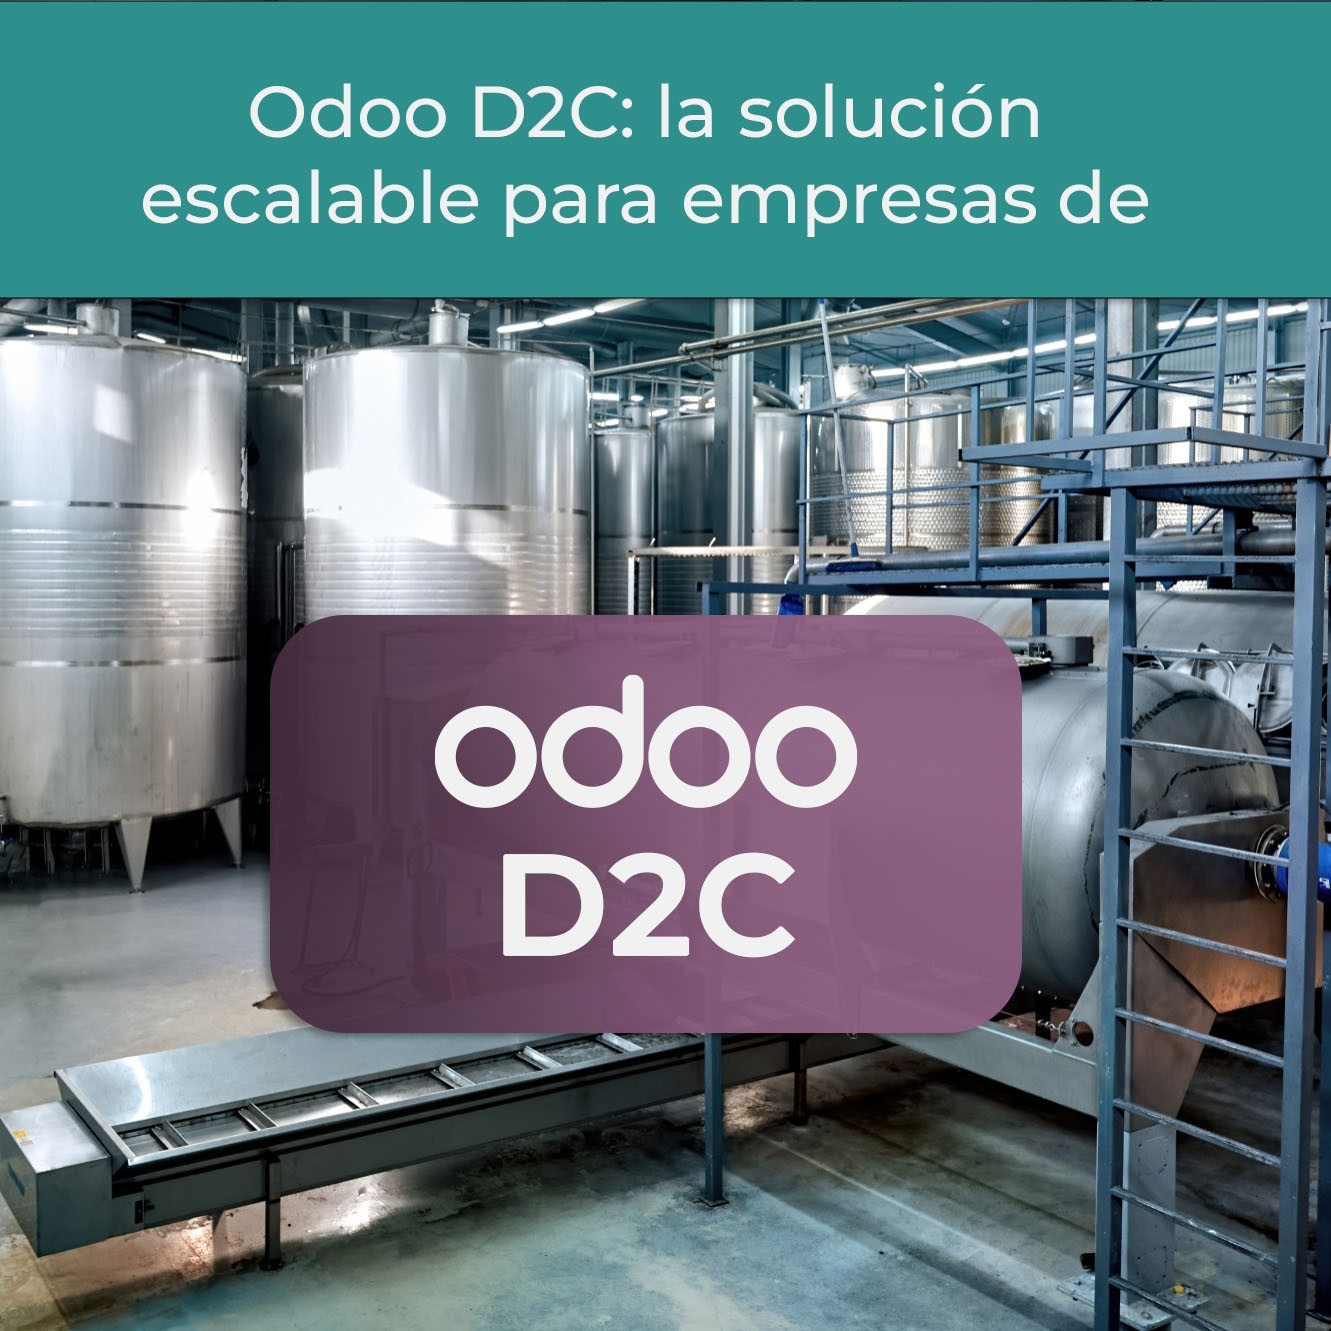 Título del artículo: Odoo D2C: la solución escalable para empresas